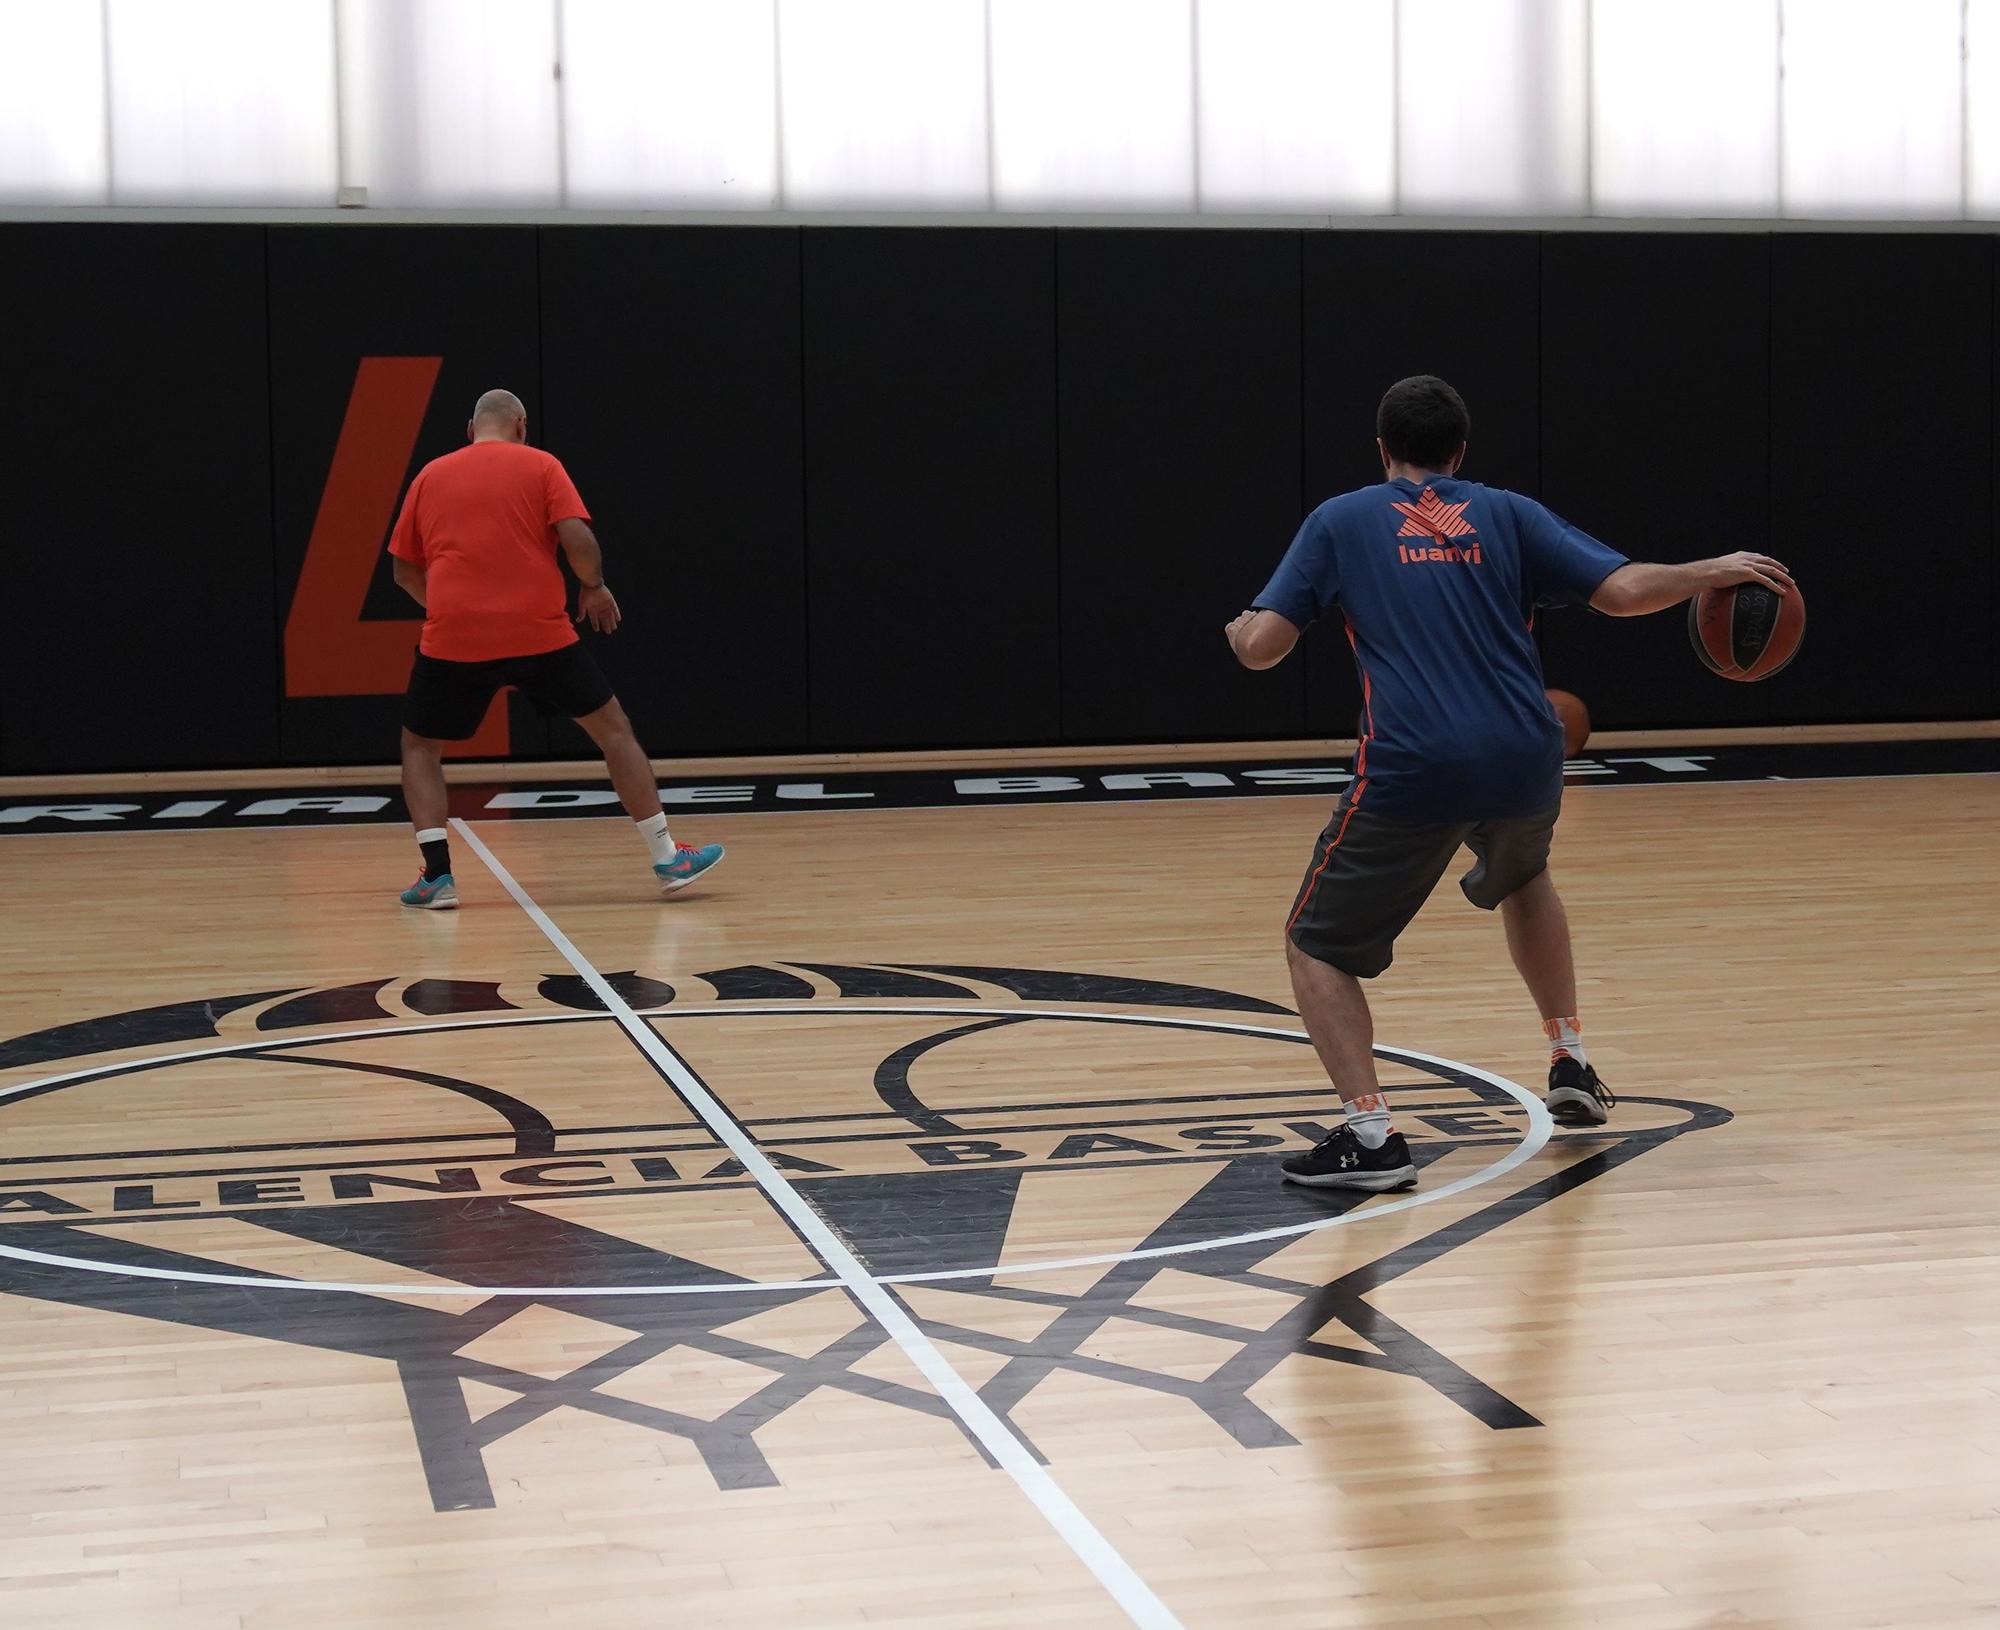 BasketFit, el programa de entrenamiento de L’Alqueria del Basket con ejercicios de fuerza y aeróbicos que integra actividades de baloncesto, crece solo tres meses después de su lanzamiento.